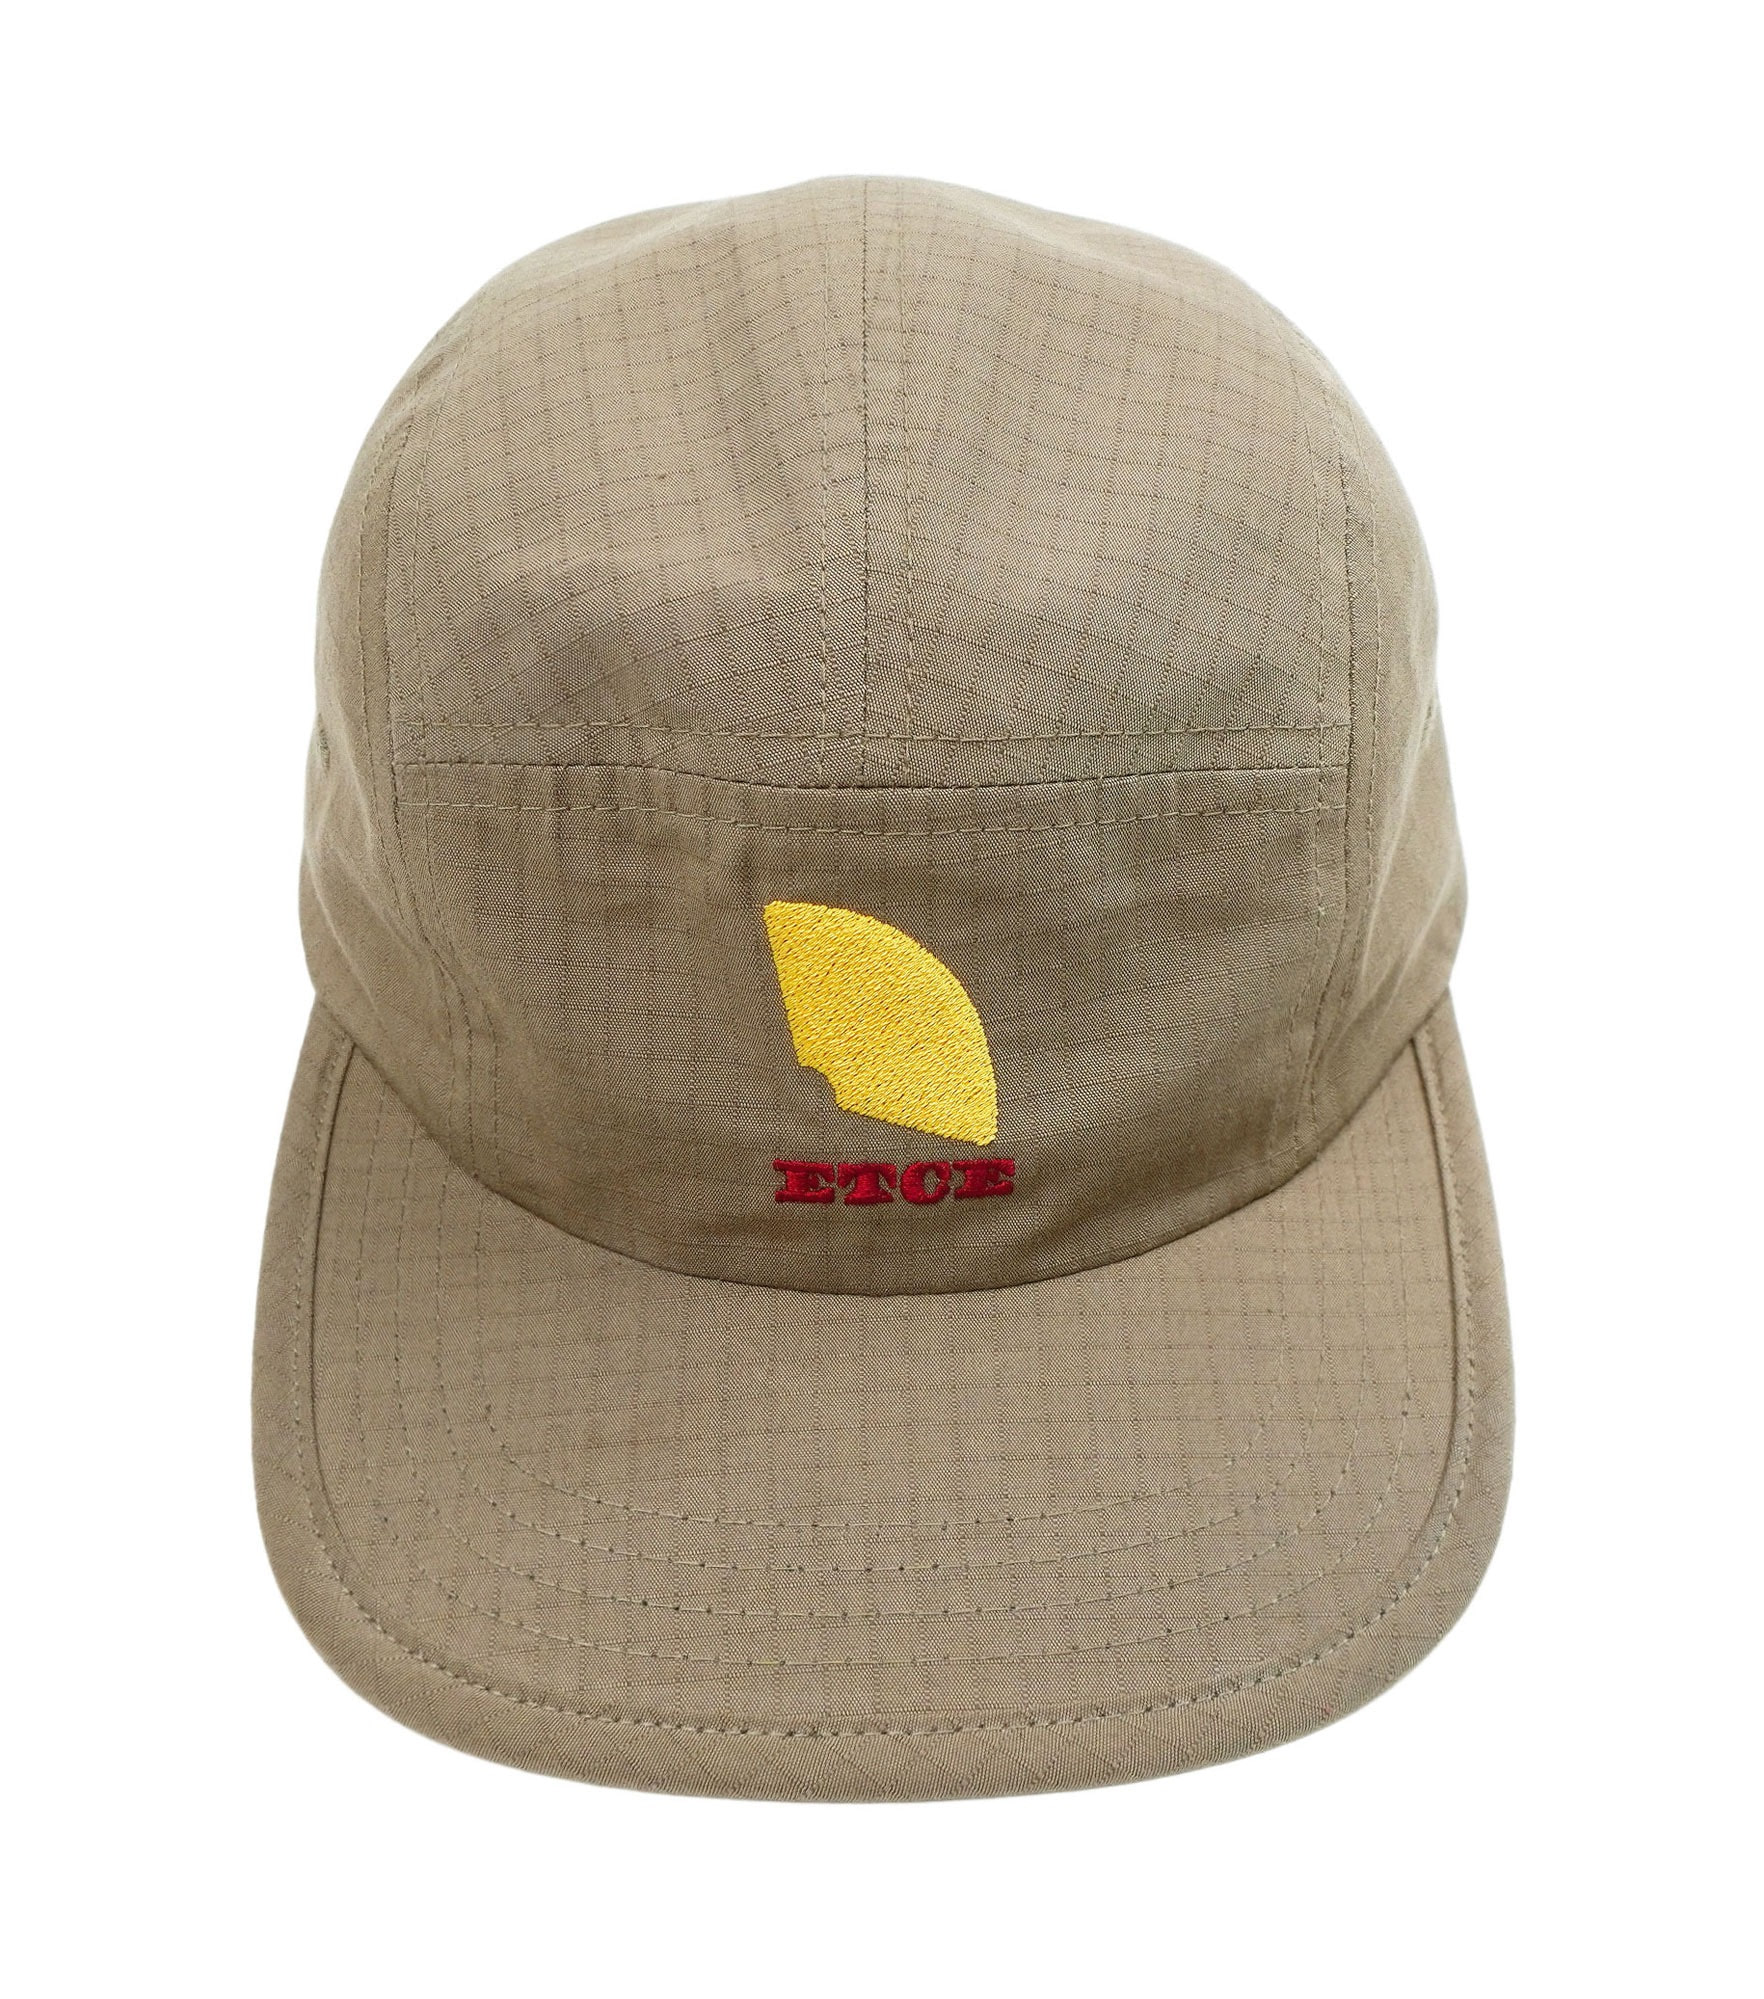 DART LOGO CAMP CAP (BEIGE)